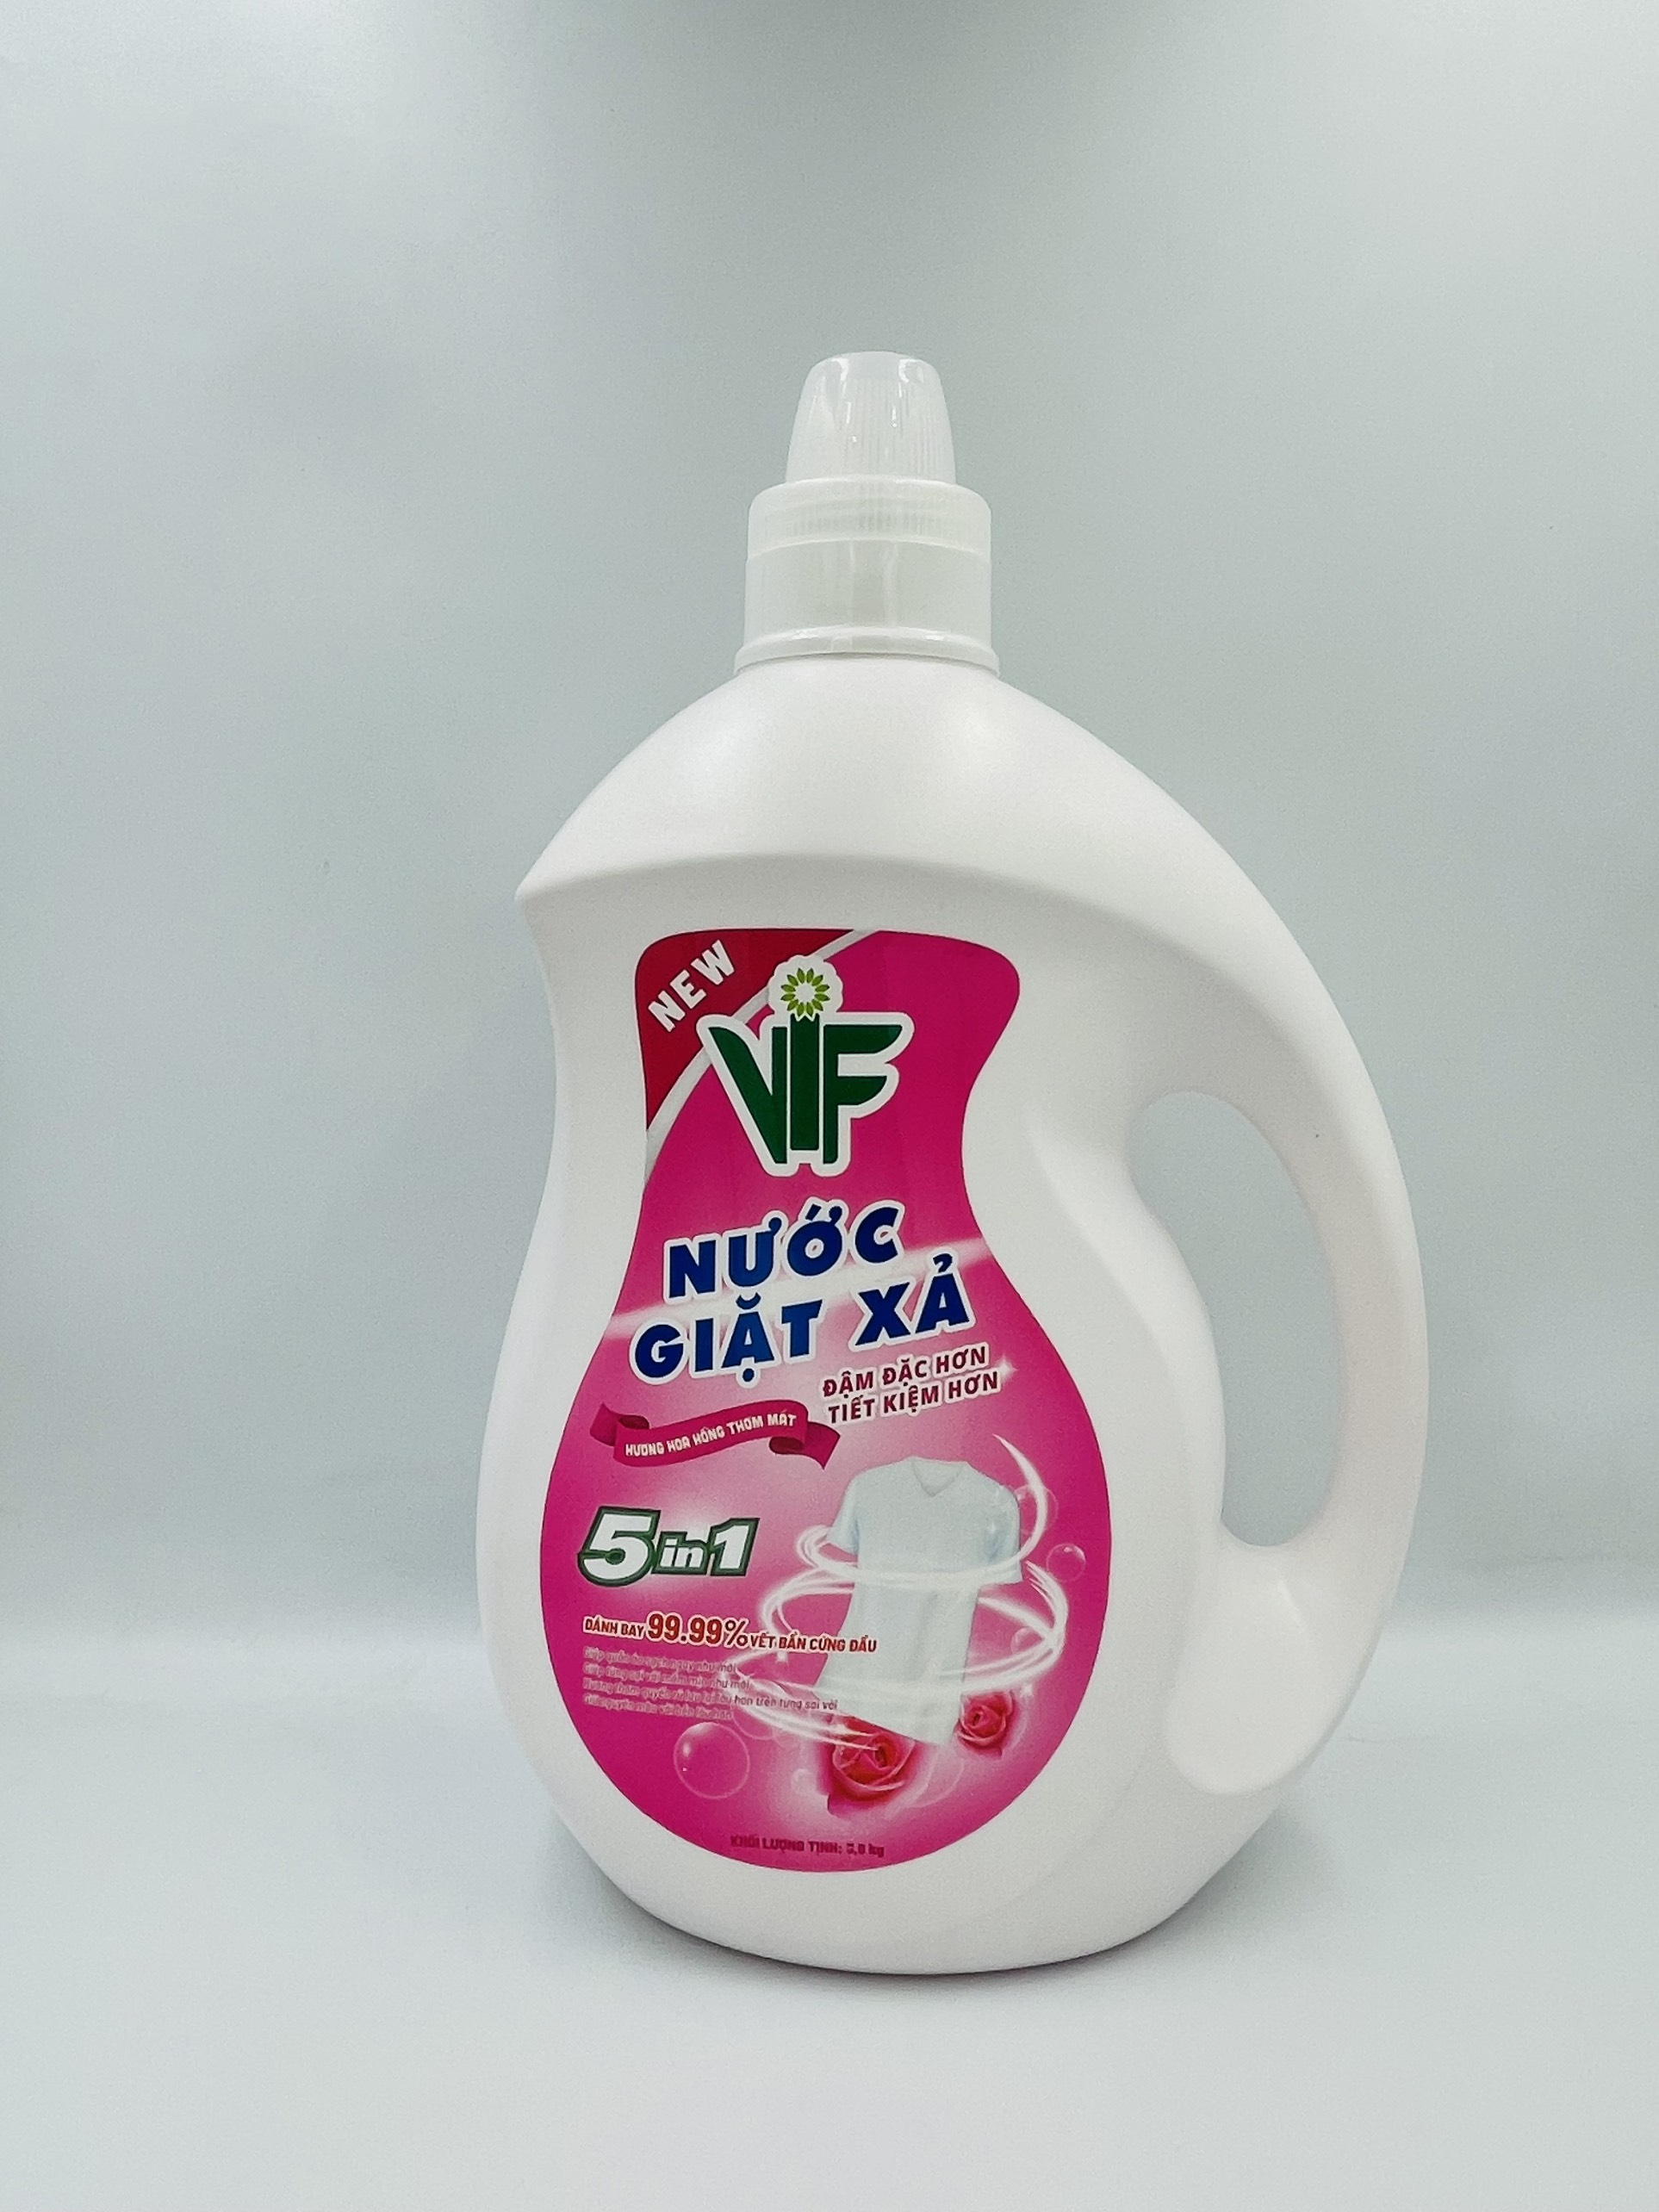 Nước giặt xả VIF 5in1 3.6kg Hương hoa hồng thơm mát